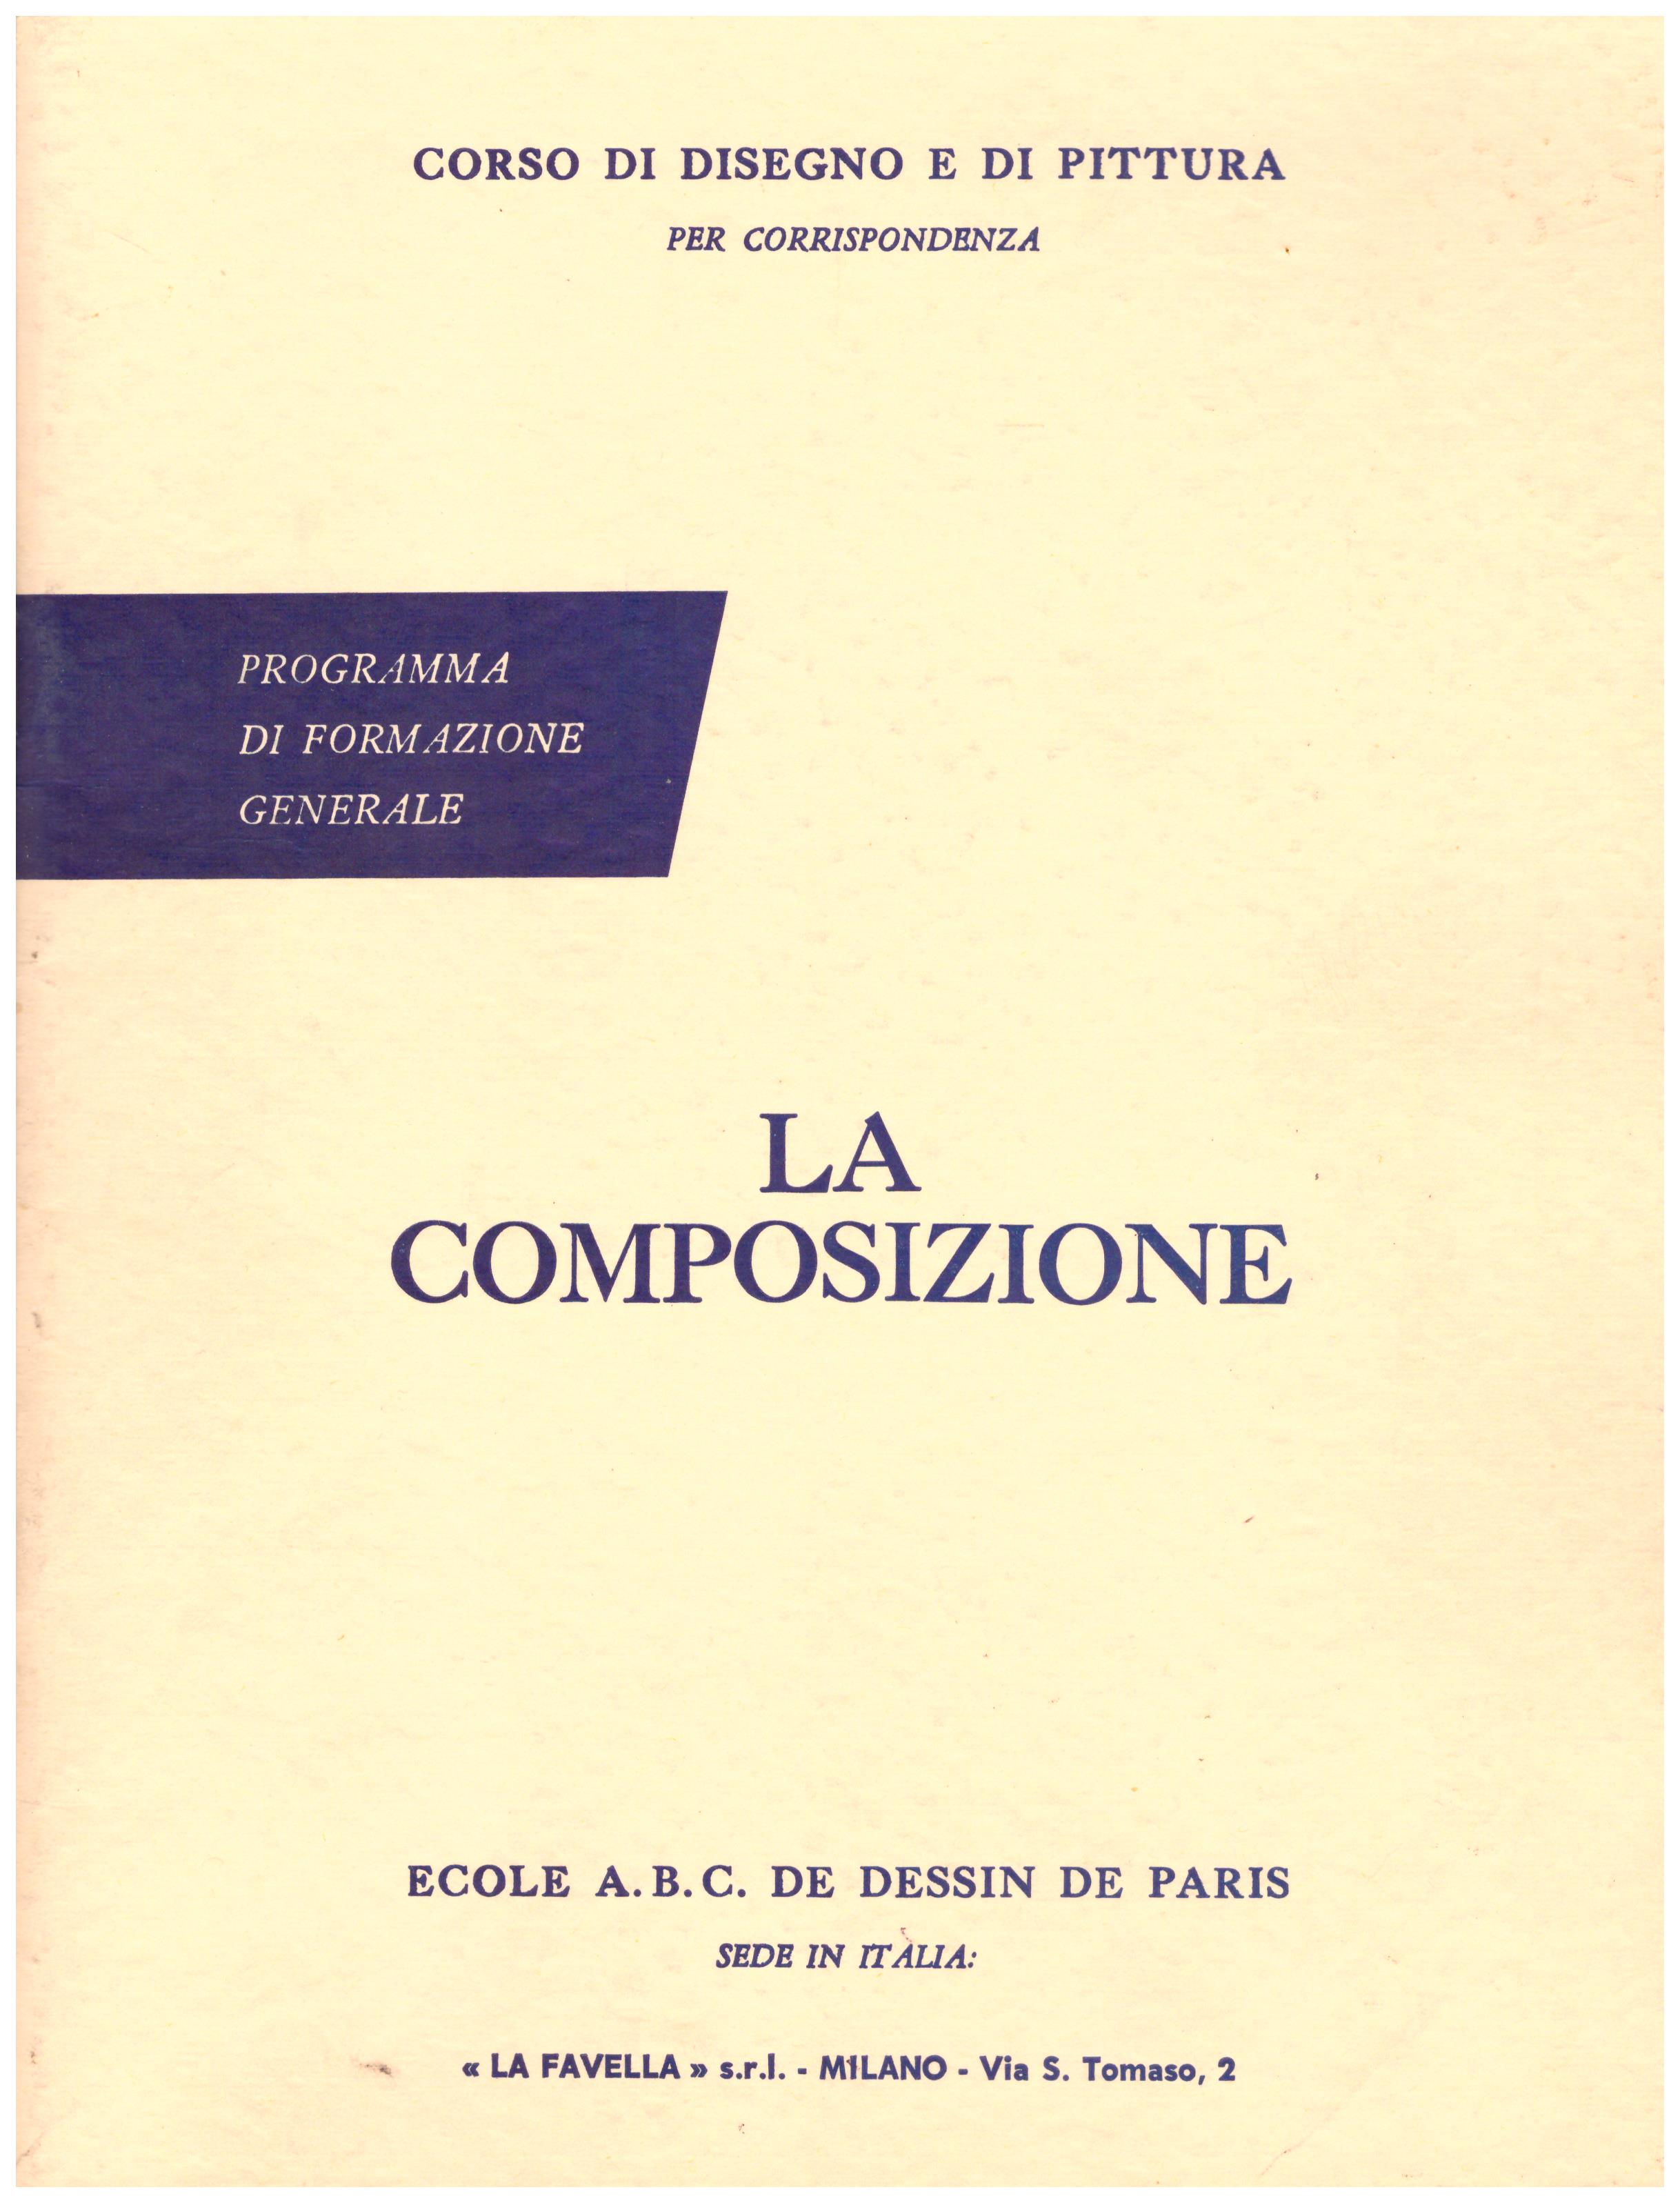 Titolo: Corso di disegno e pittura, la composizione  Autore: AA.VV.  Editore: Ecole A.B.C. de dessin de Paris sede in Italia: La Favella, Milano 1962